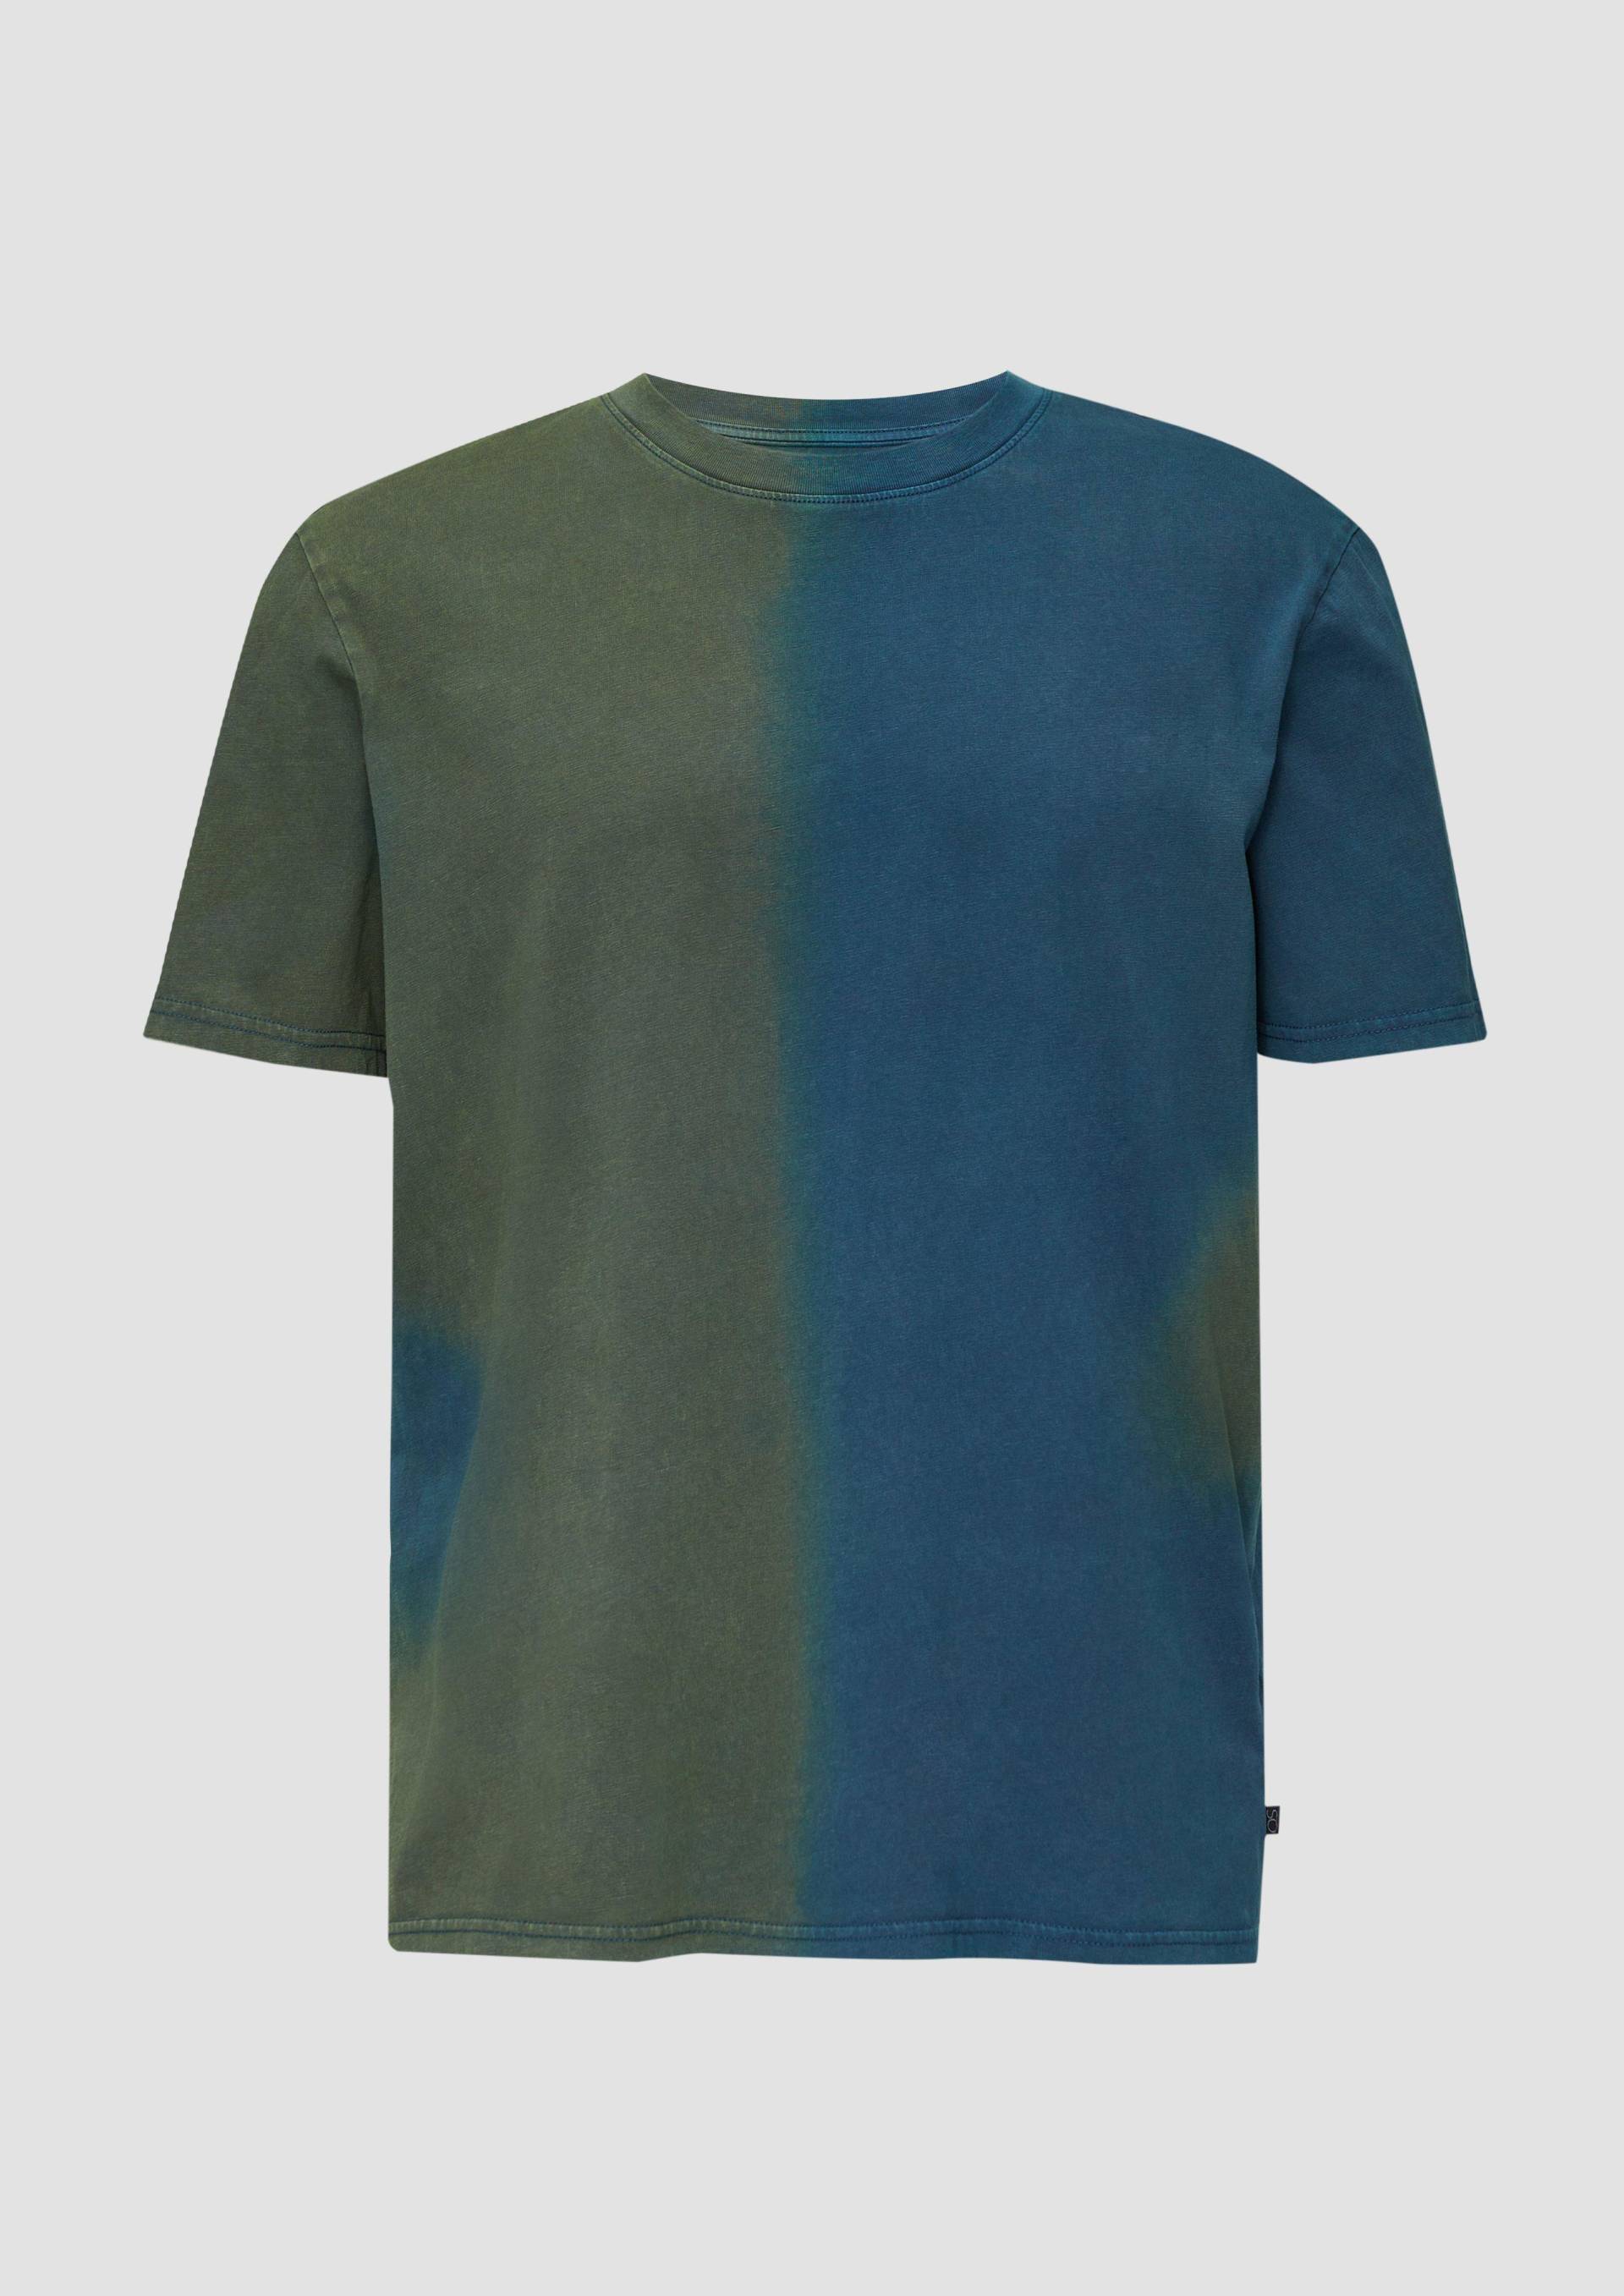 QS - T-Shirt mit Waschung, Herren, olive|petrol von QS